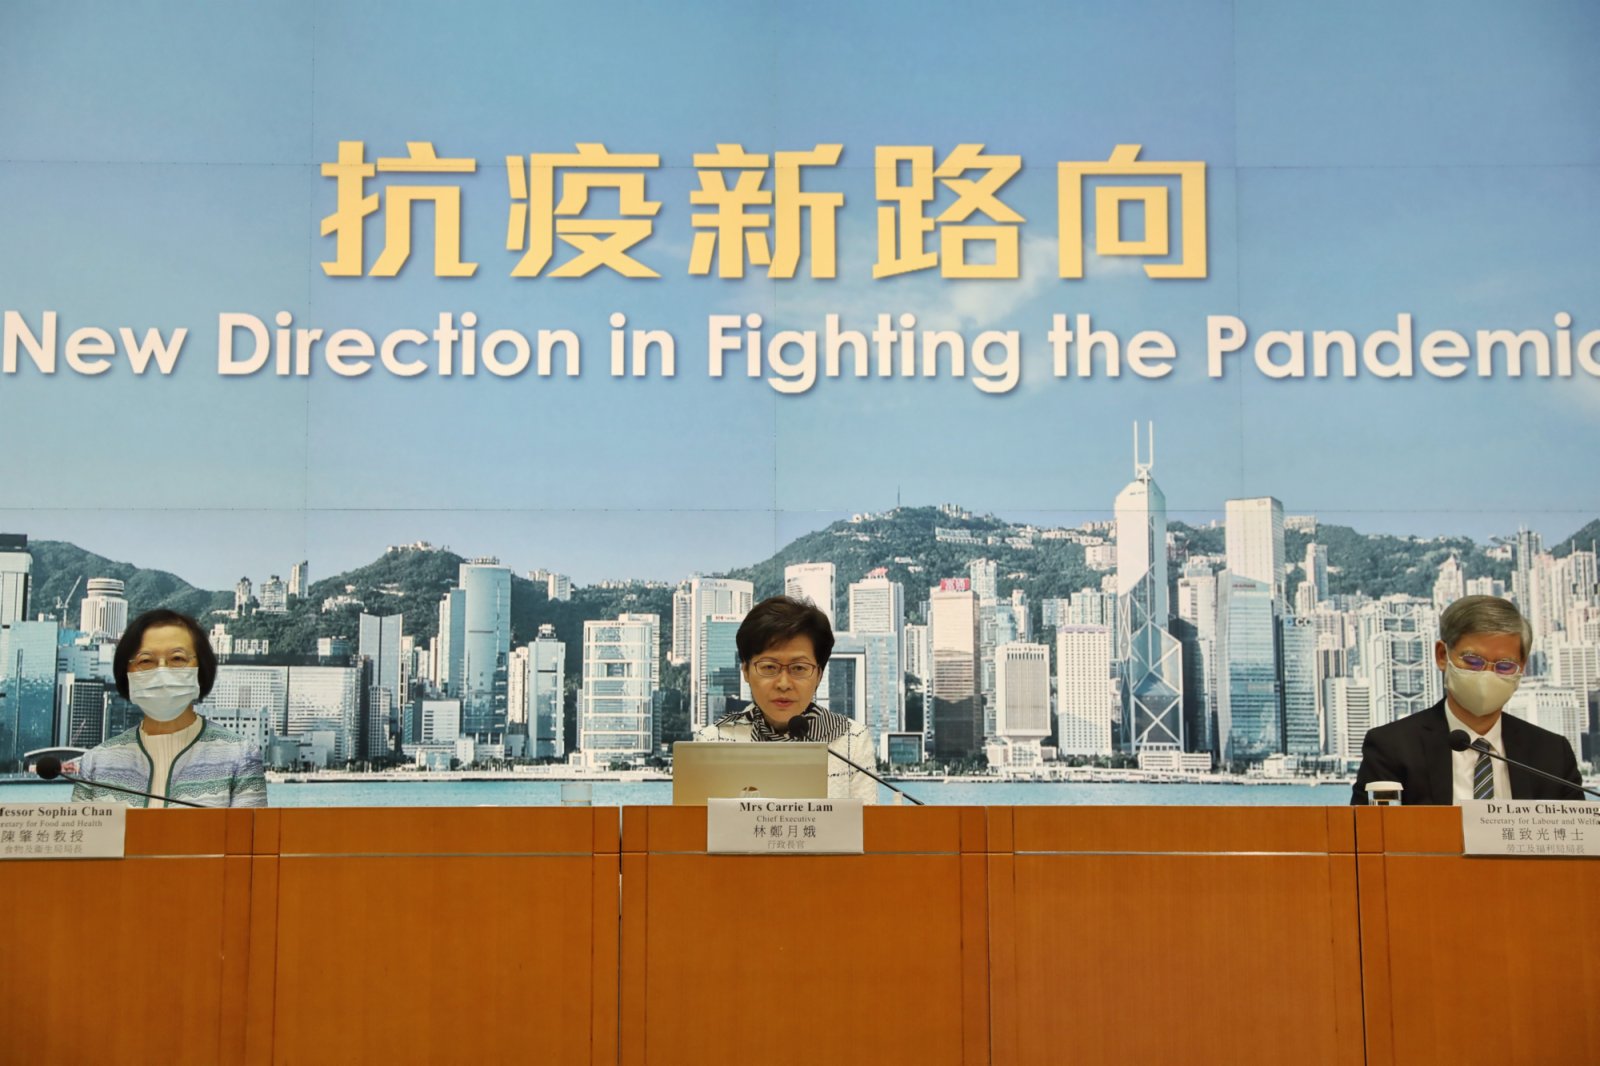 特首官林鄭月娥(中)在記者會上表示，第四波疫情明顯受控，達到階段性成果，從全球客觀標準來看，香港已屬於低風險地區。(香港中通社)